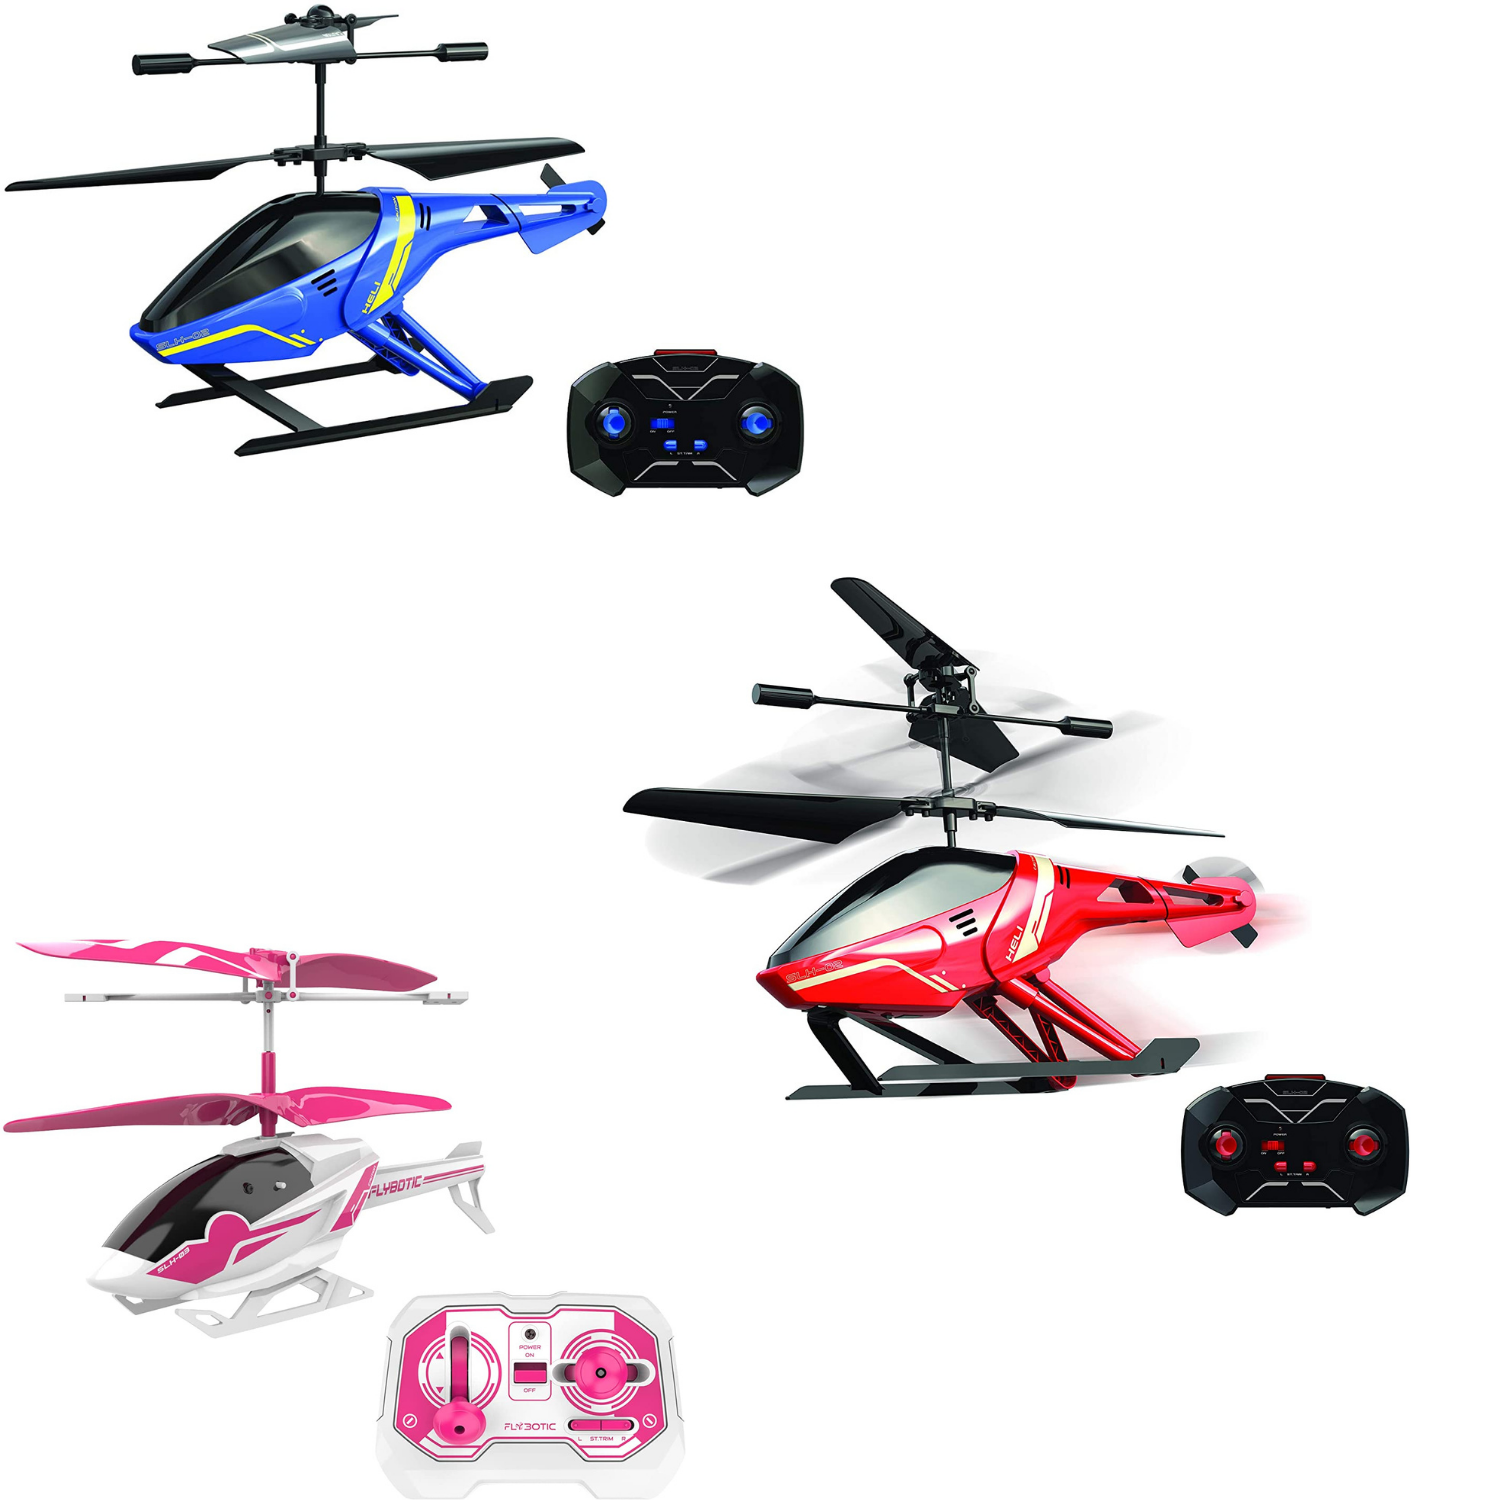 Flybotic Bumper Drone - Drone Télécommandé Pour Enfant - 8 Ans Et